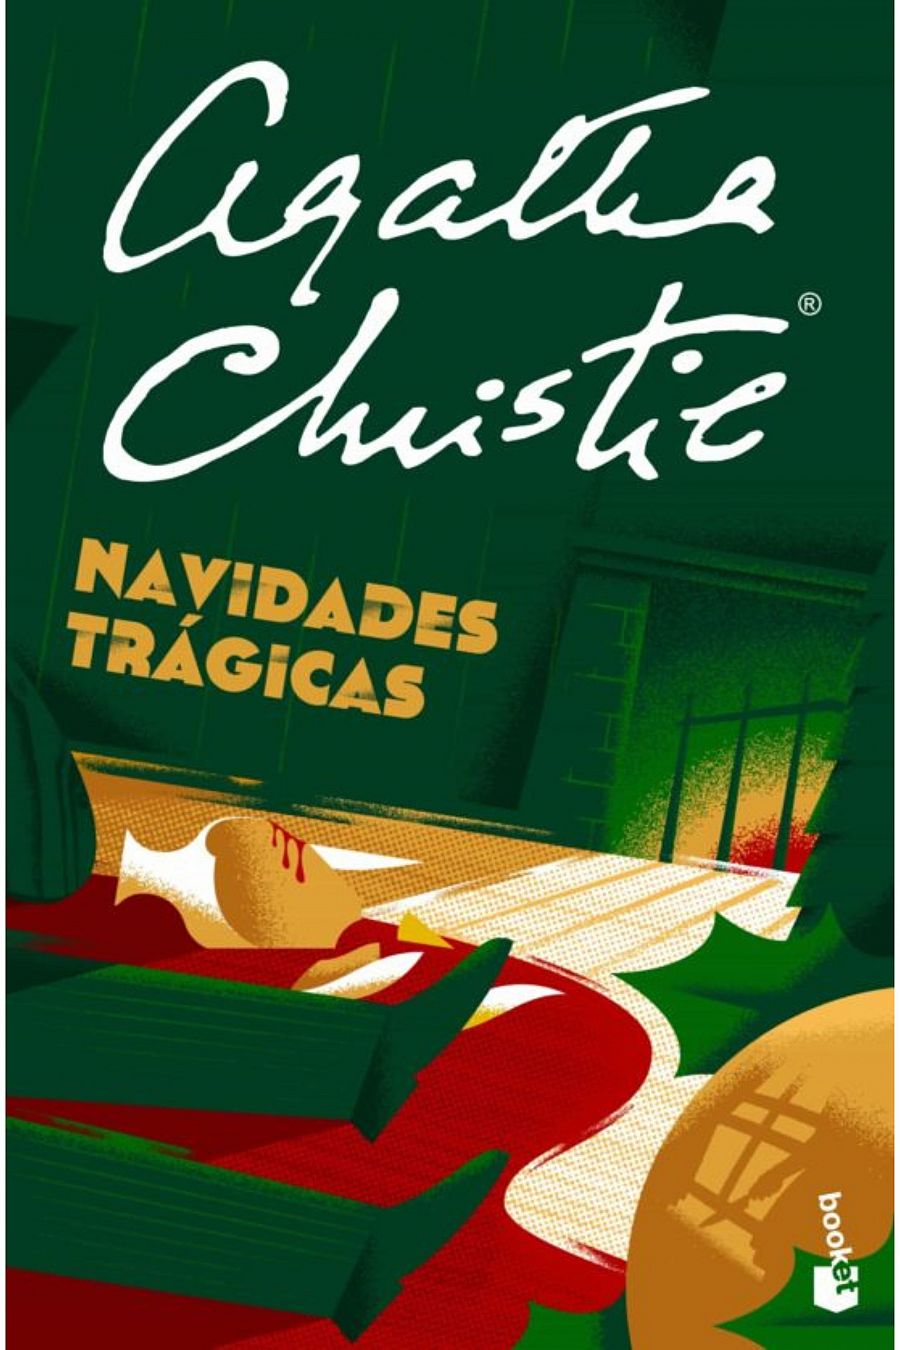 Portada de 'Navidades trágicas', de Agatha Christie, libro para leer en Navidad 2022